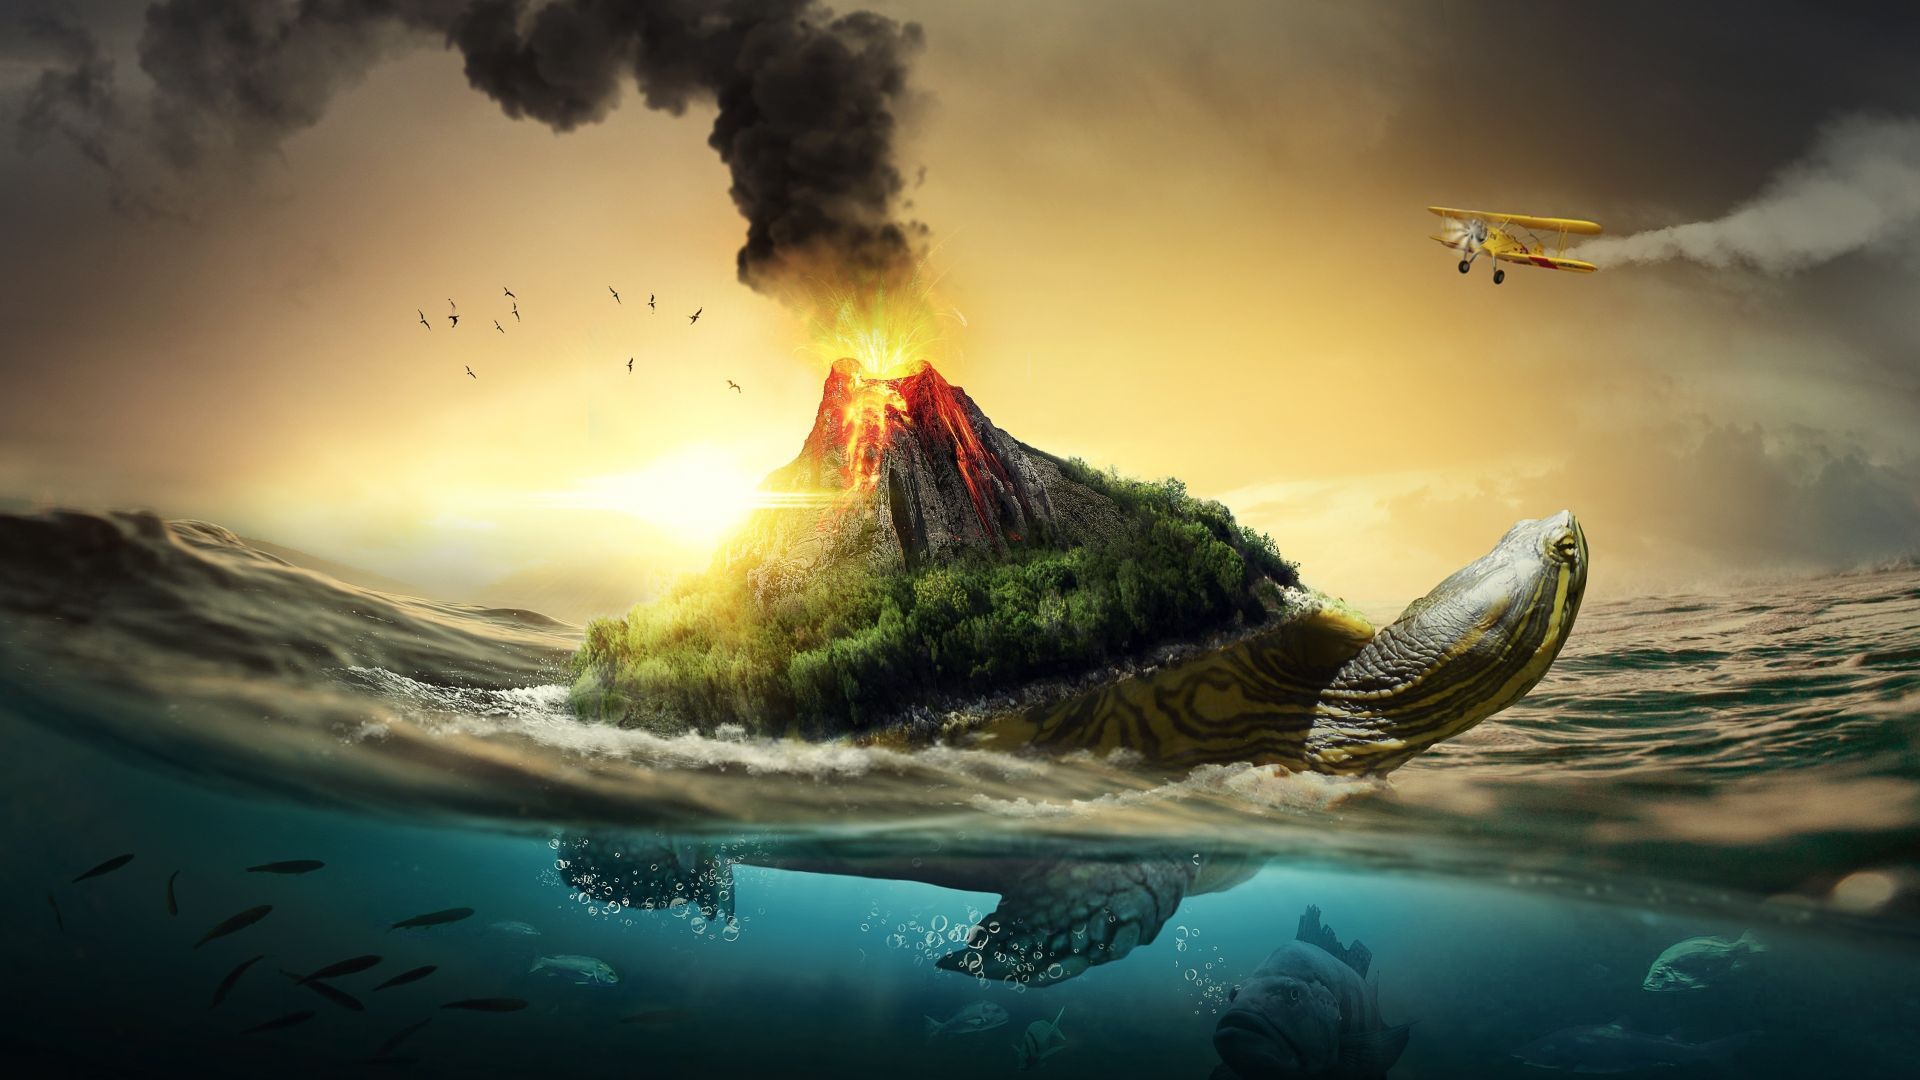 صحنه ای رویایی و خیالی از جزیره آتشفشانی روی لاک پشت در اقیانوس ها